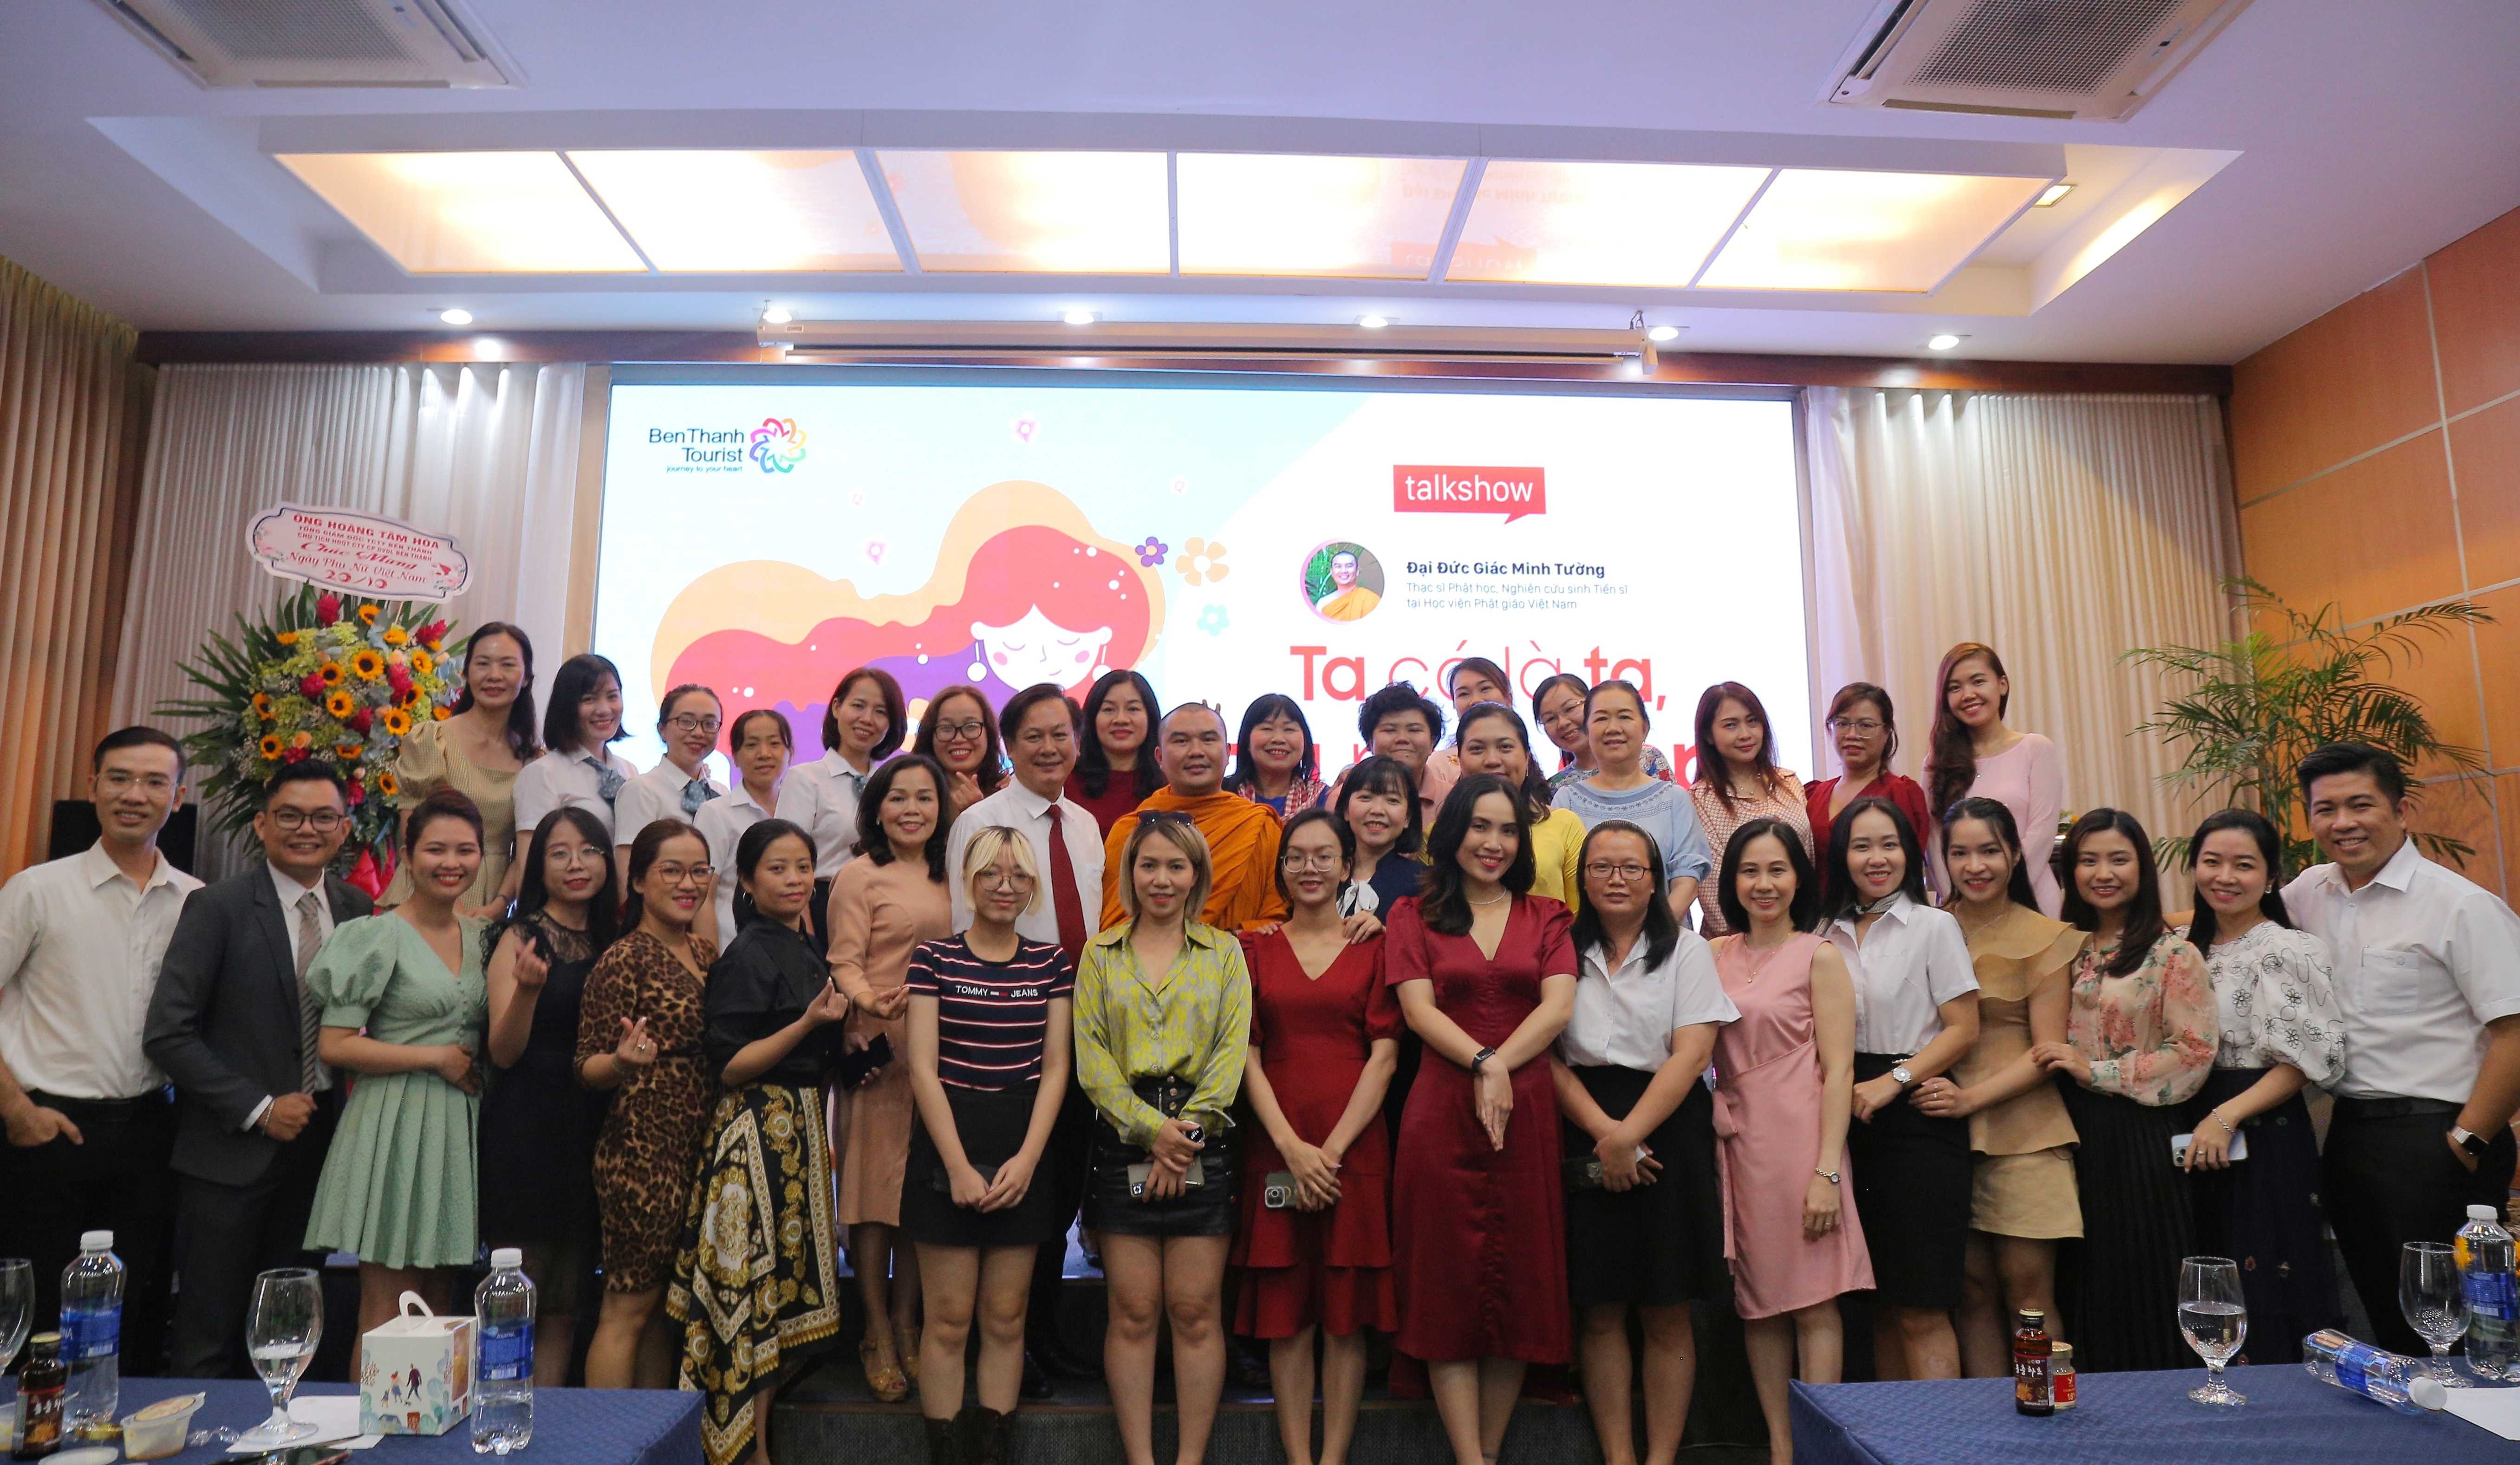 BenThanh Tourist họp mặt mừng Ngày phụ nữ Việt Nam năm 2022